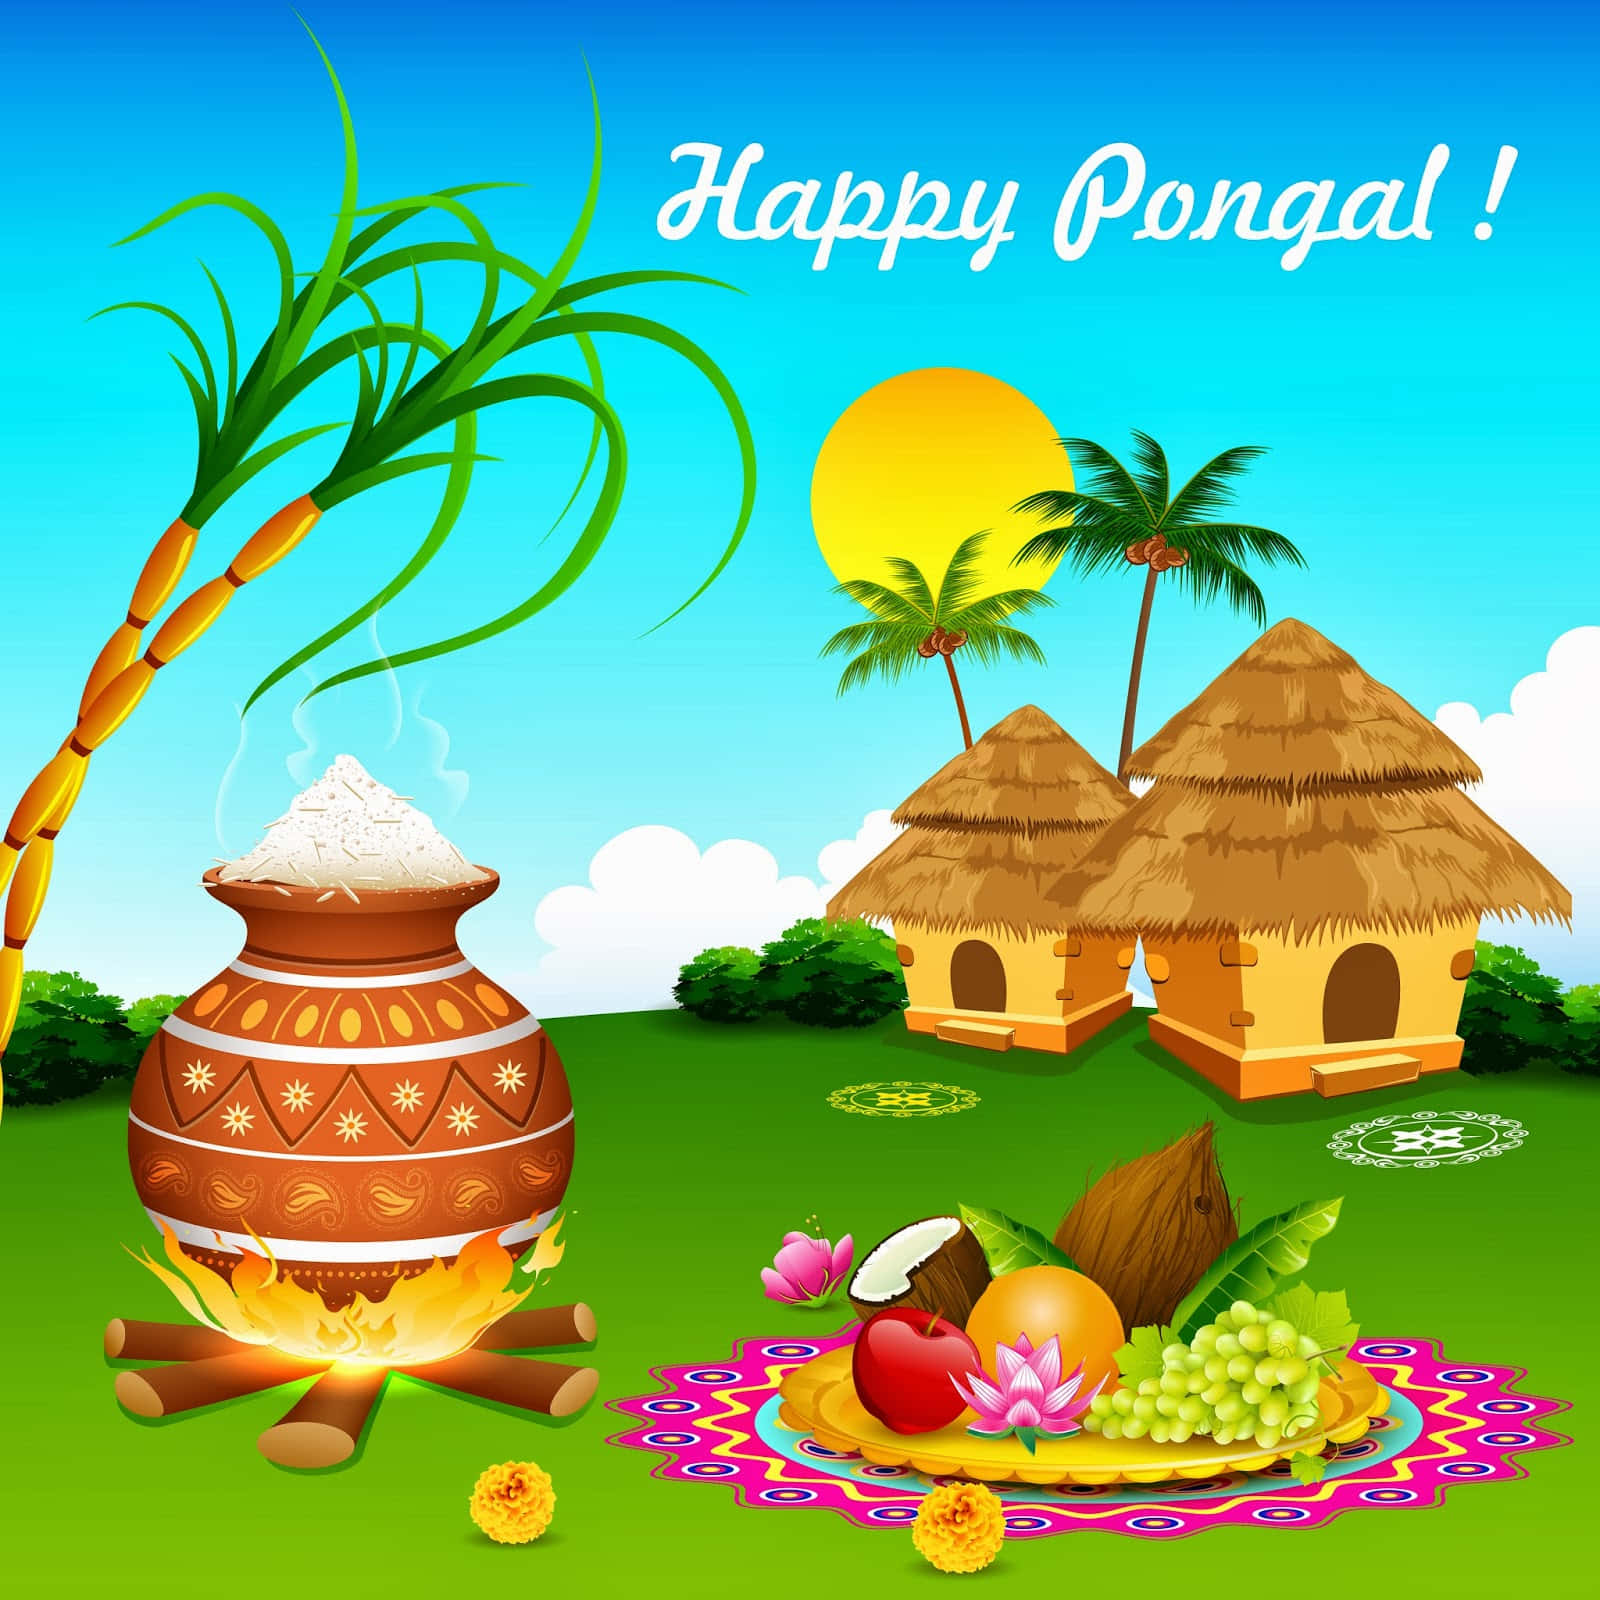 Celebrating Pongal with joy